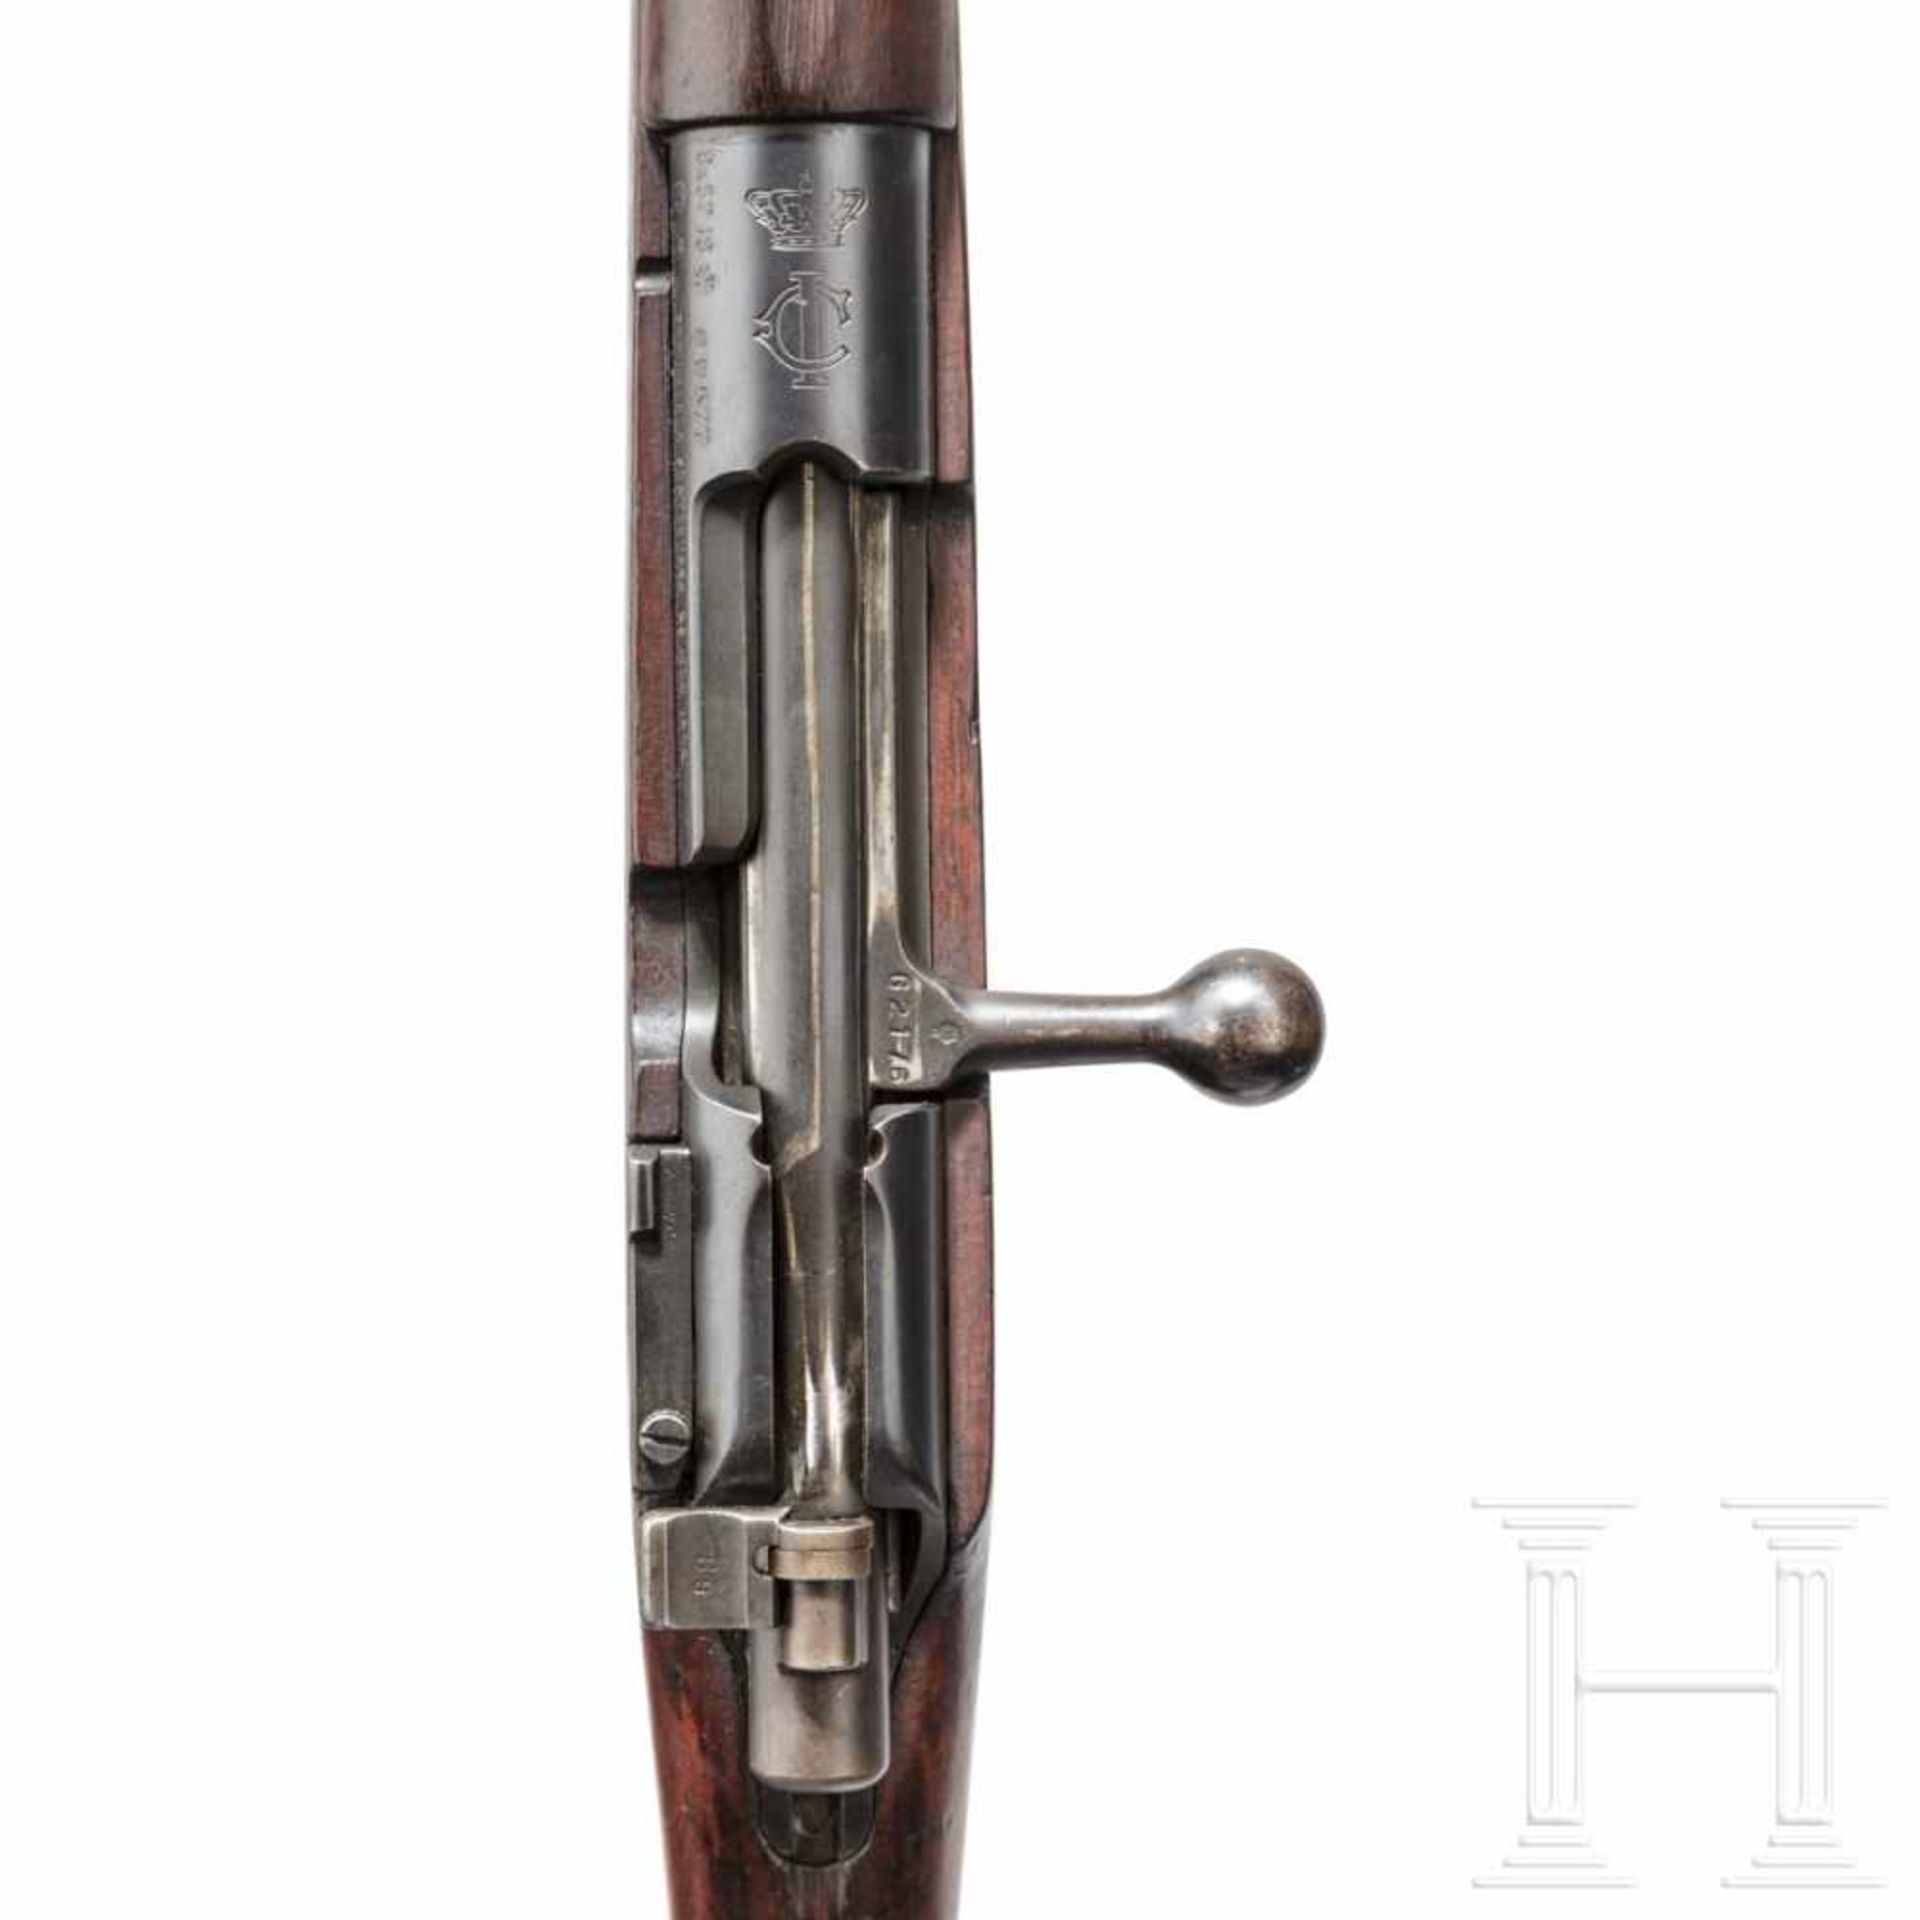 Portugal - Karabiner M 1904 / M 39, DWMKal. 8x57 IS, Nr. G2176, Nummerngleich bis auf Schlößchen. - Bild 3 aus 3